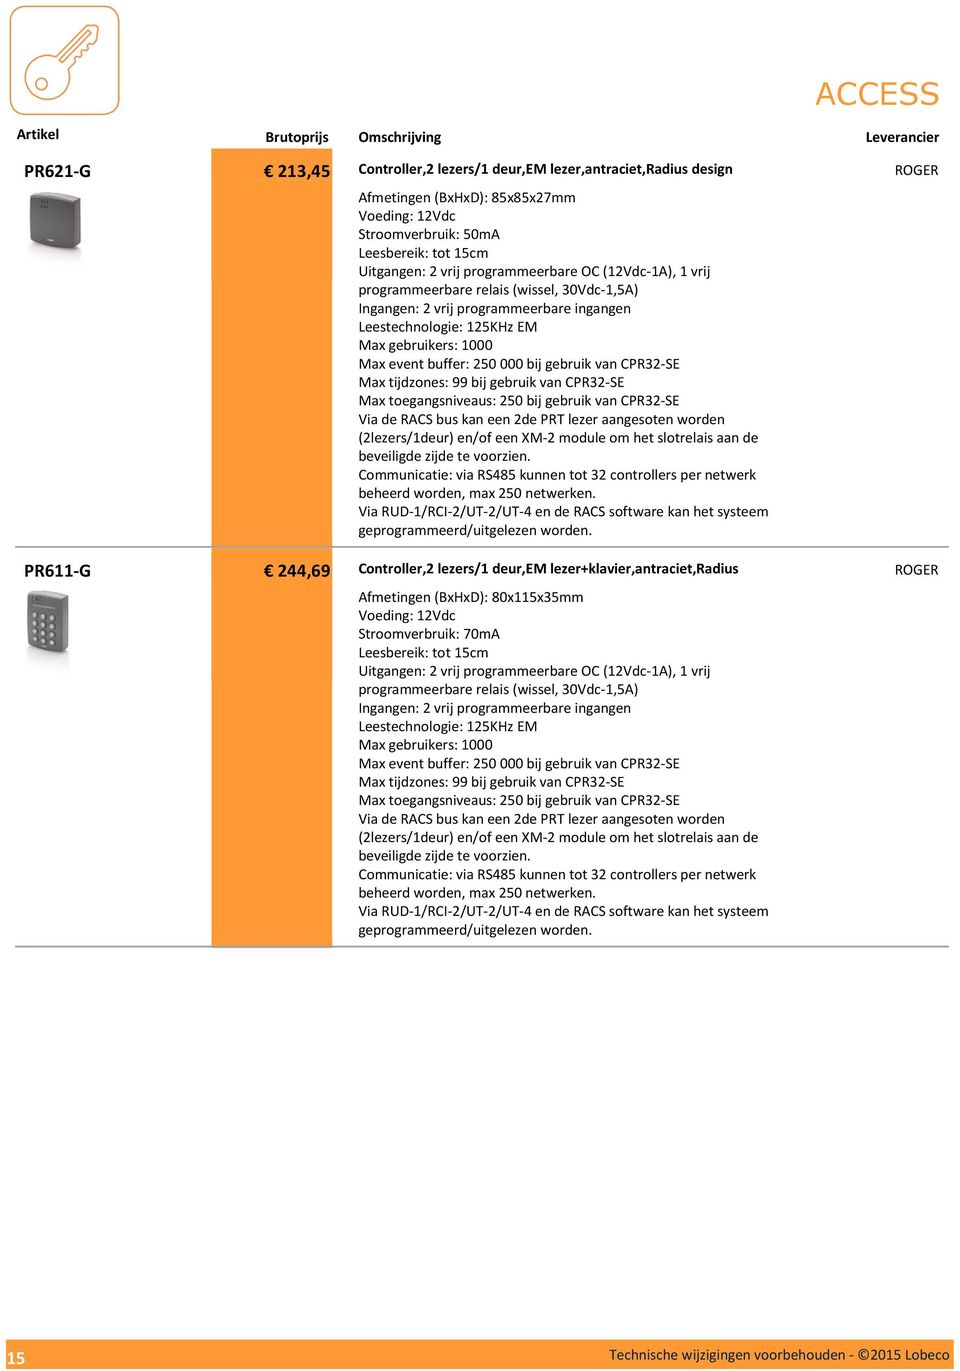 CPR32-SE Max tijdzones: 99 bij gebruik van CPR32-SE Max toegangsniveaus: 250 bij gebruik van CPR32-SE Via de RACS bus kan een 2de PRT lezer aangesoten worden (2lezers/1deur) en/of een XM-2 module om